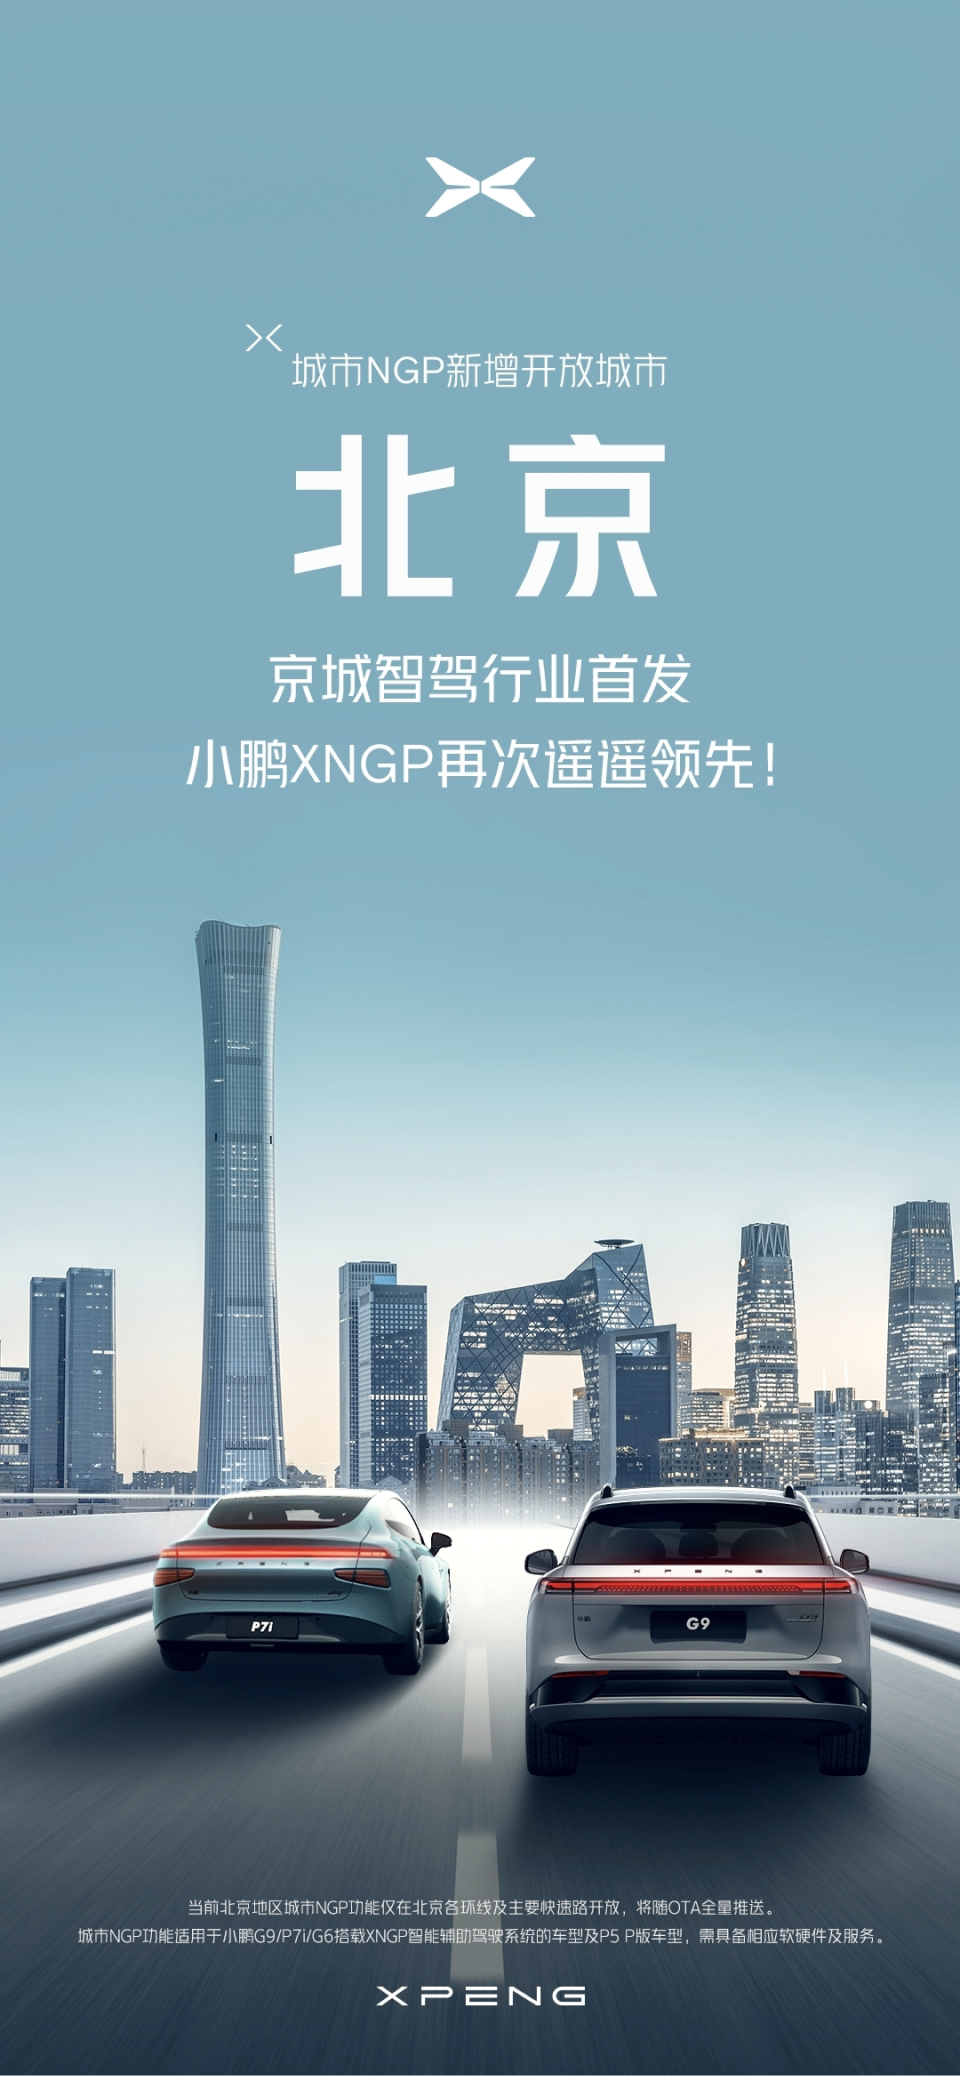 小鹏城市NGP开放北京 北京首次迎来城